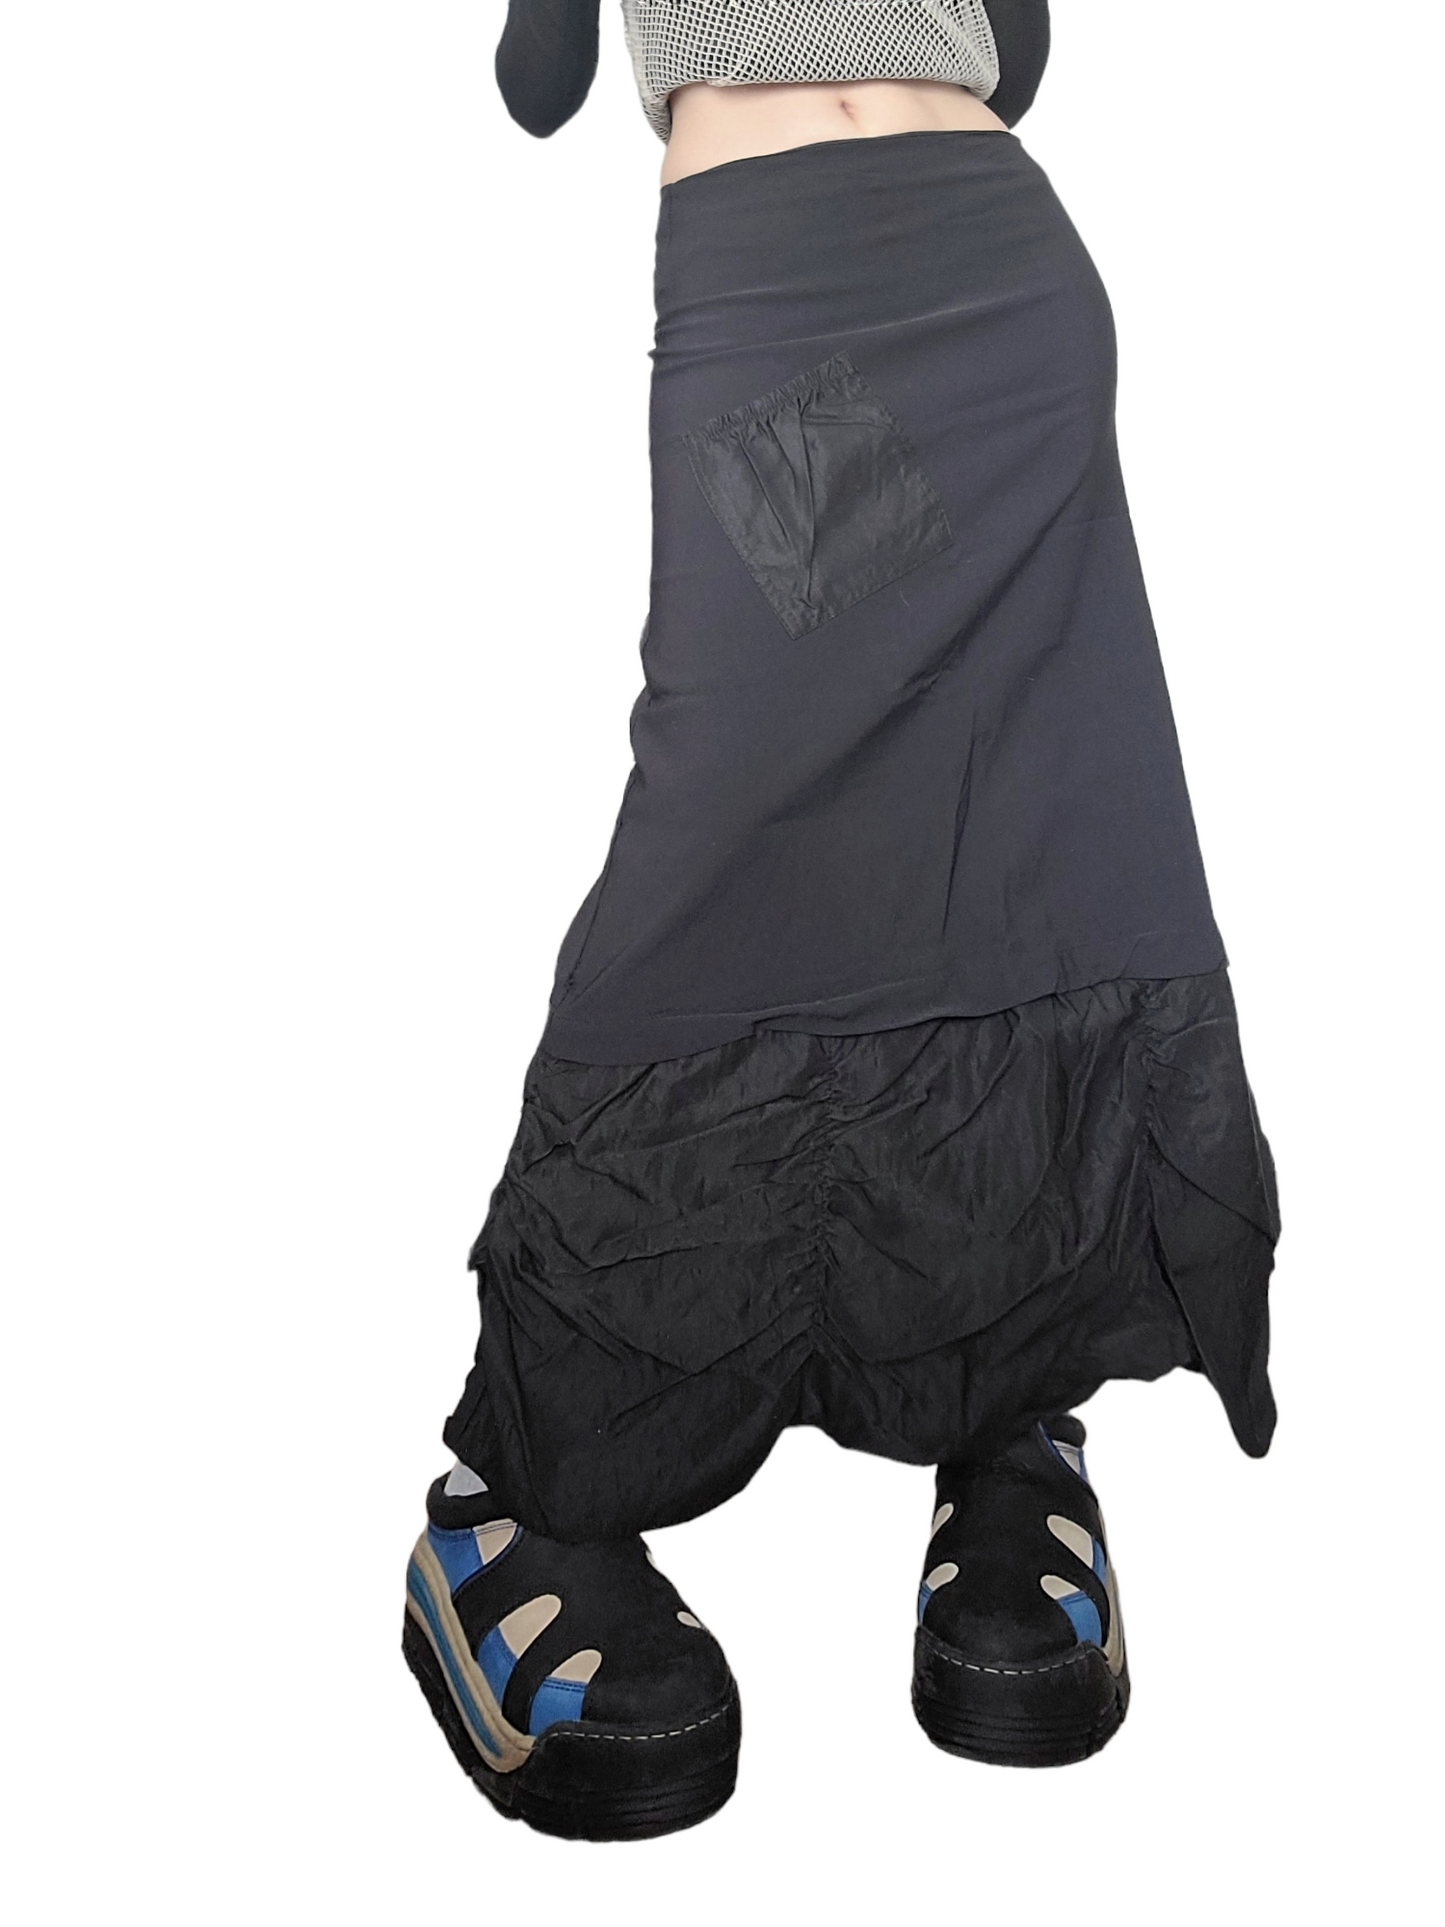 Maxi skirt parachute noire gorpcore